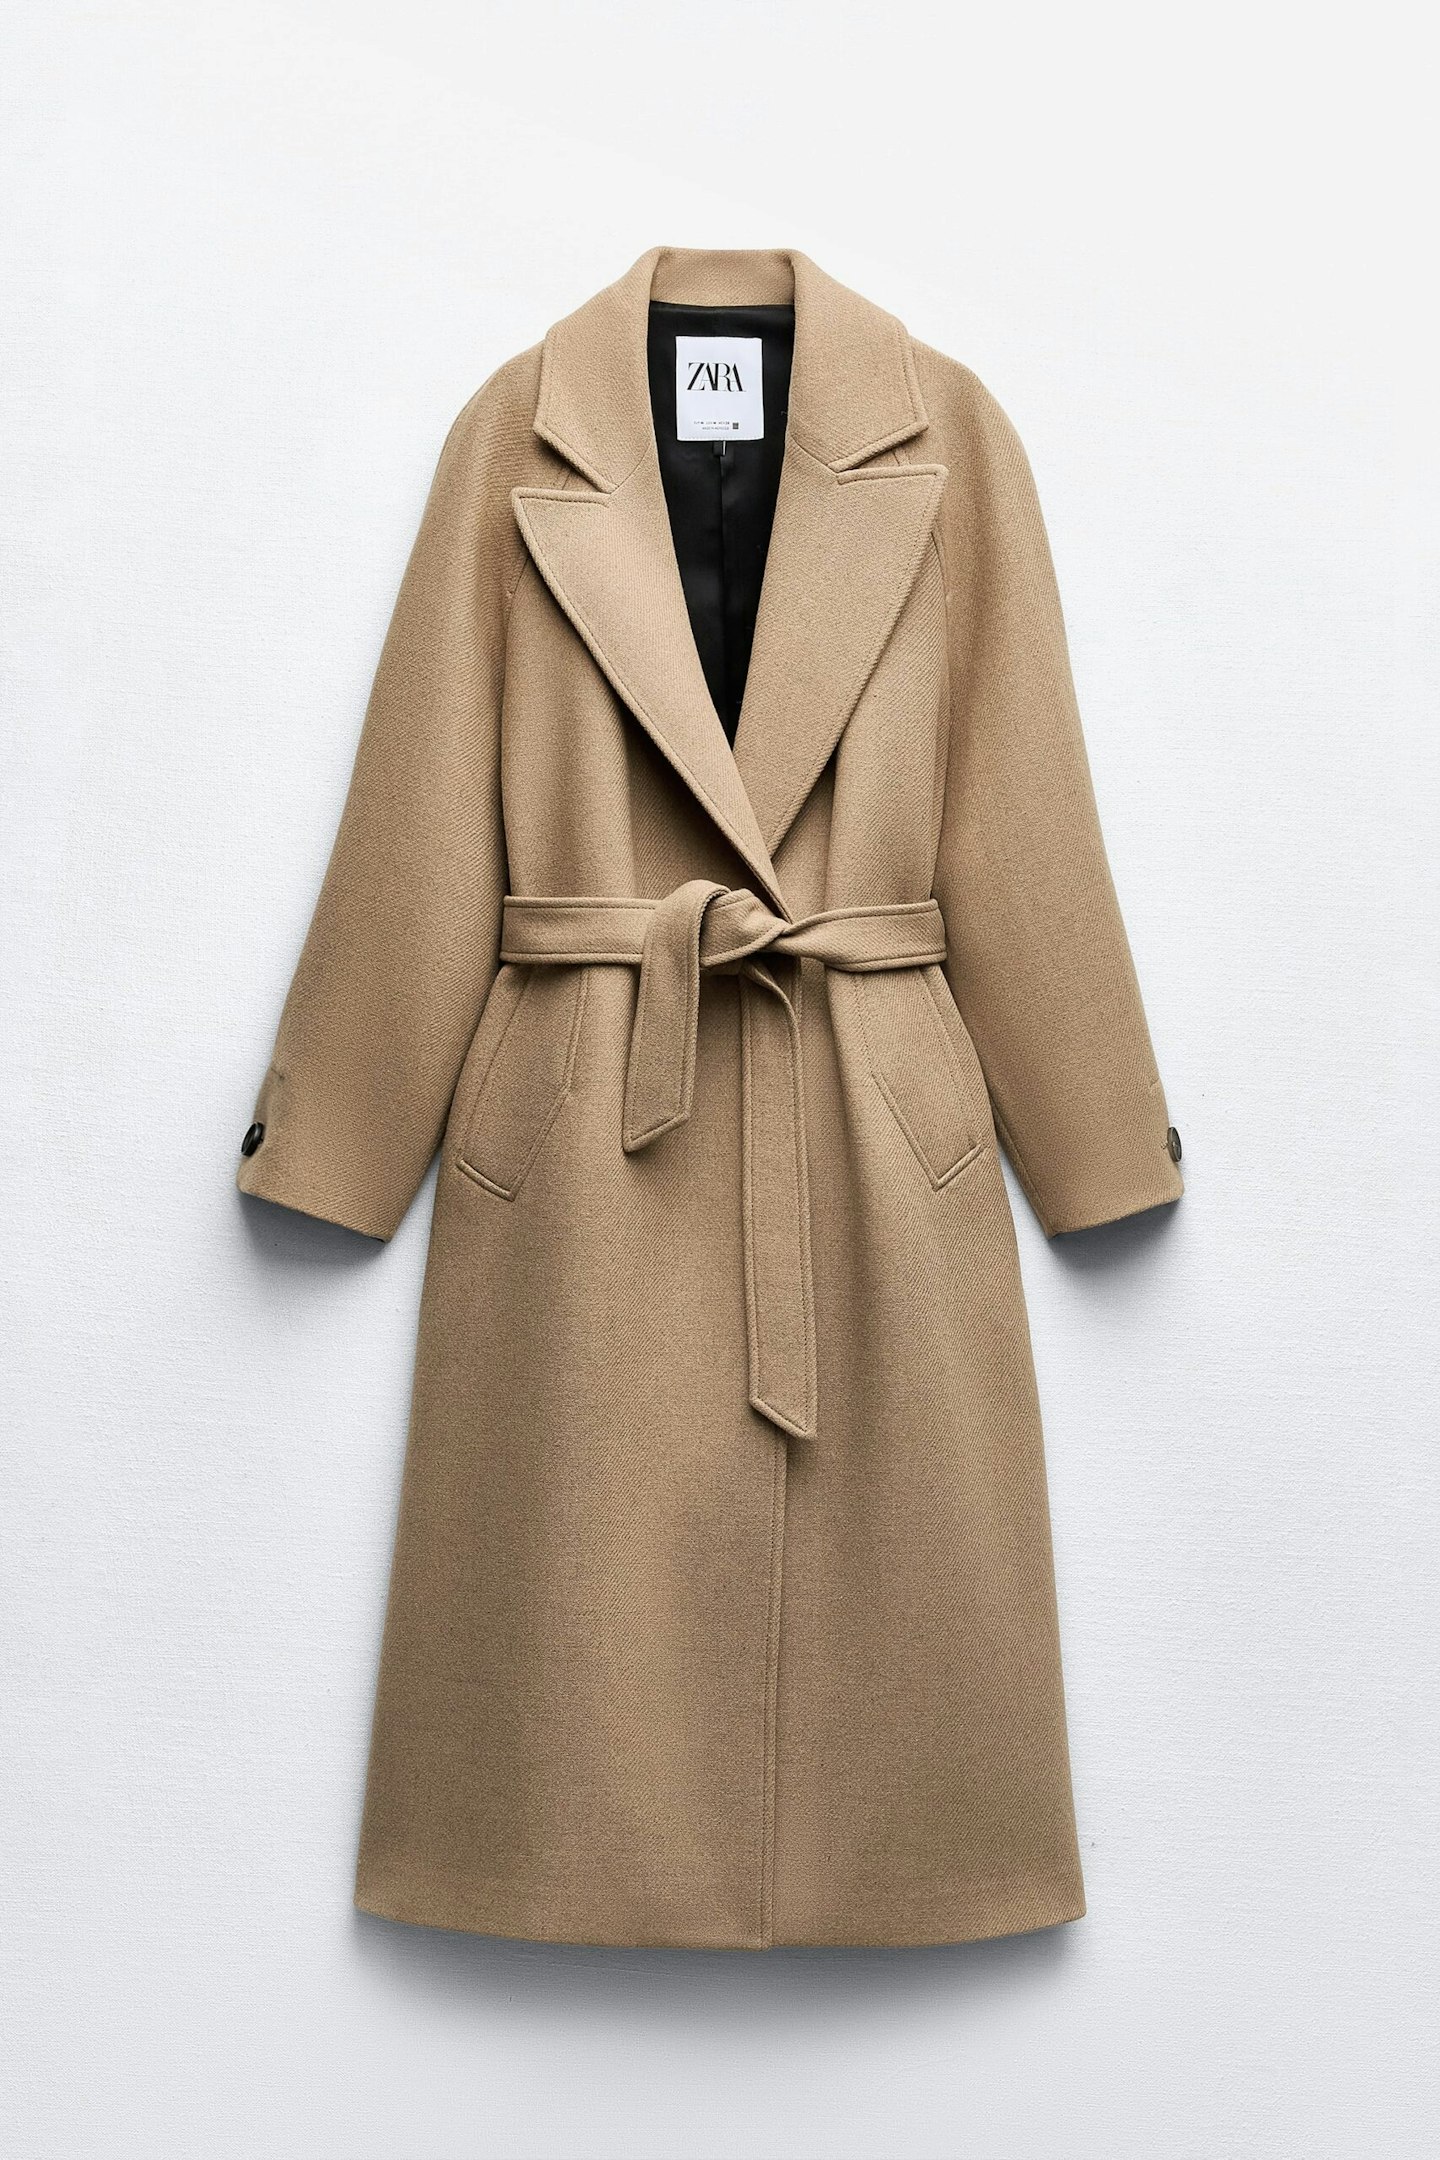 Zara, Longline Belted Wool-Blend Coat